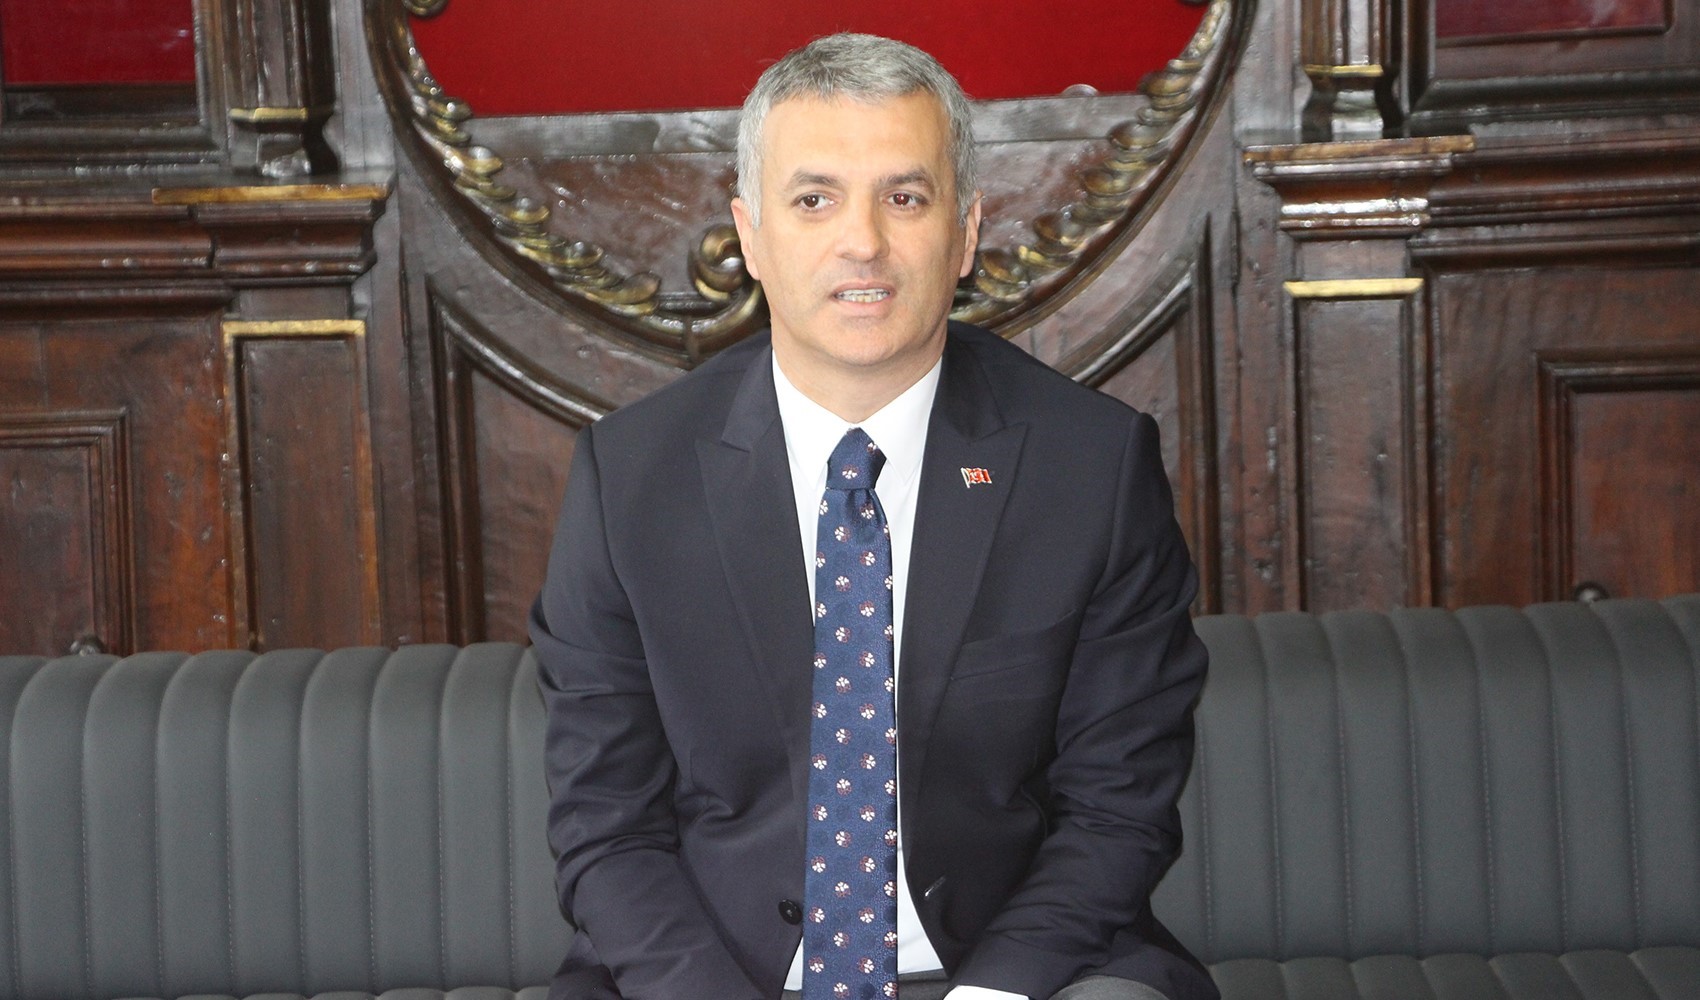 İYİ Parti'li Belediye Başkanı istifa etti: 'Ayrışmadan kaynaklı'